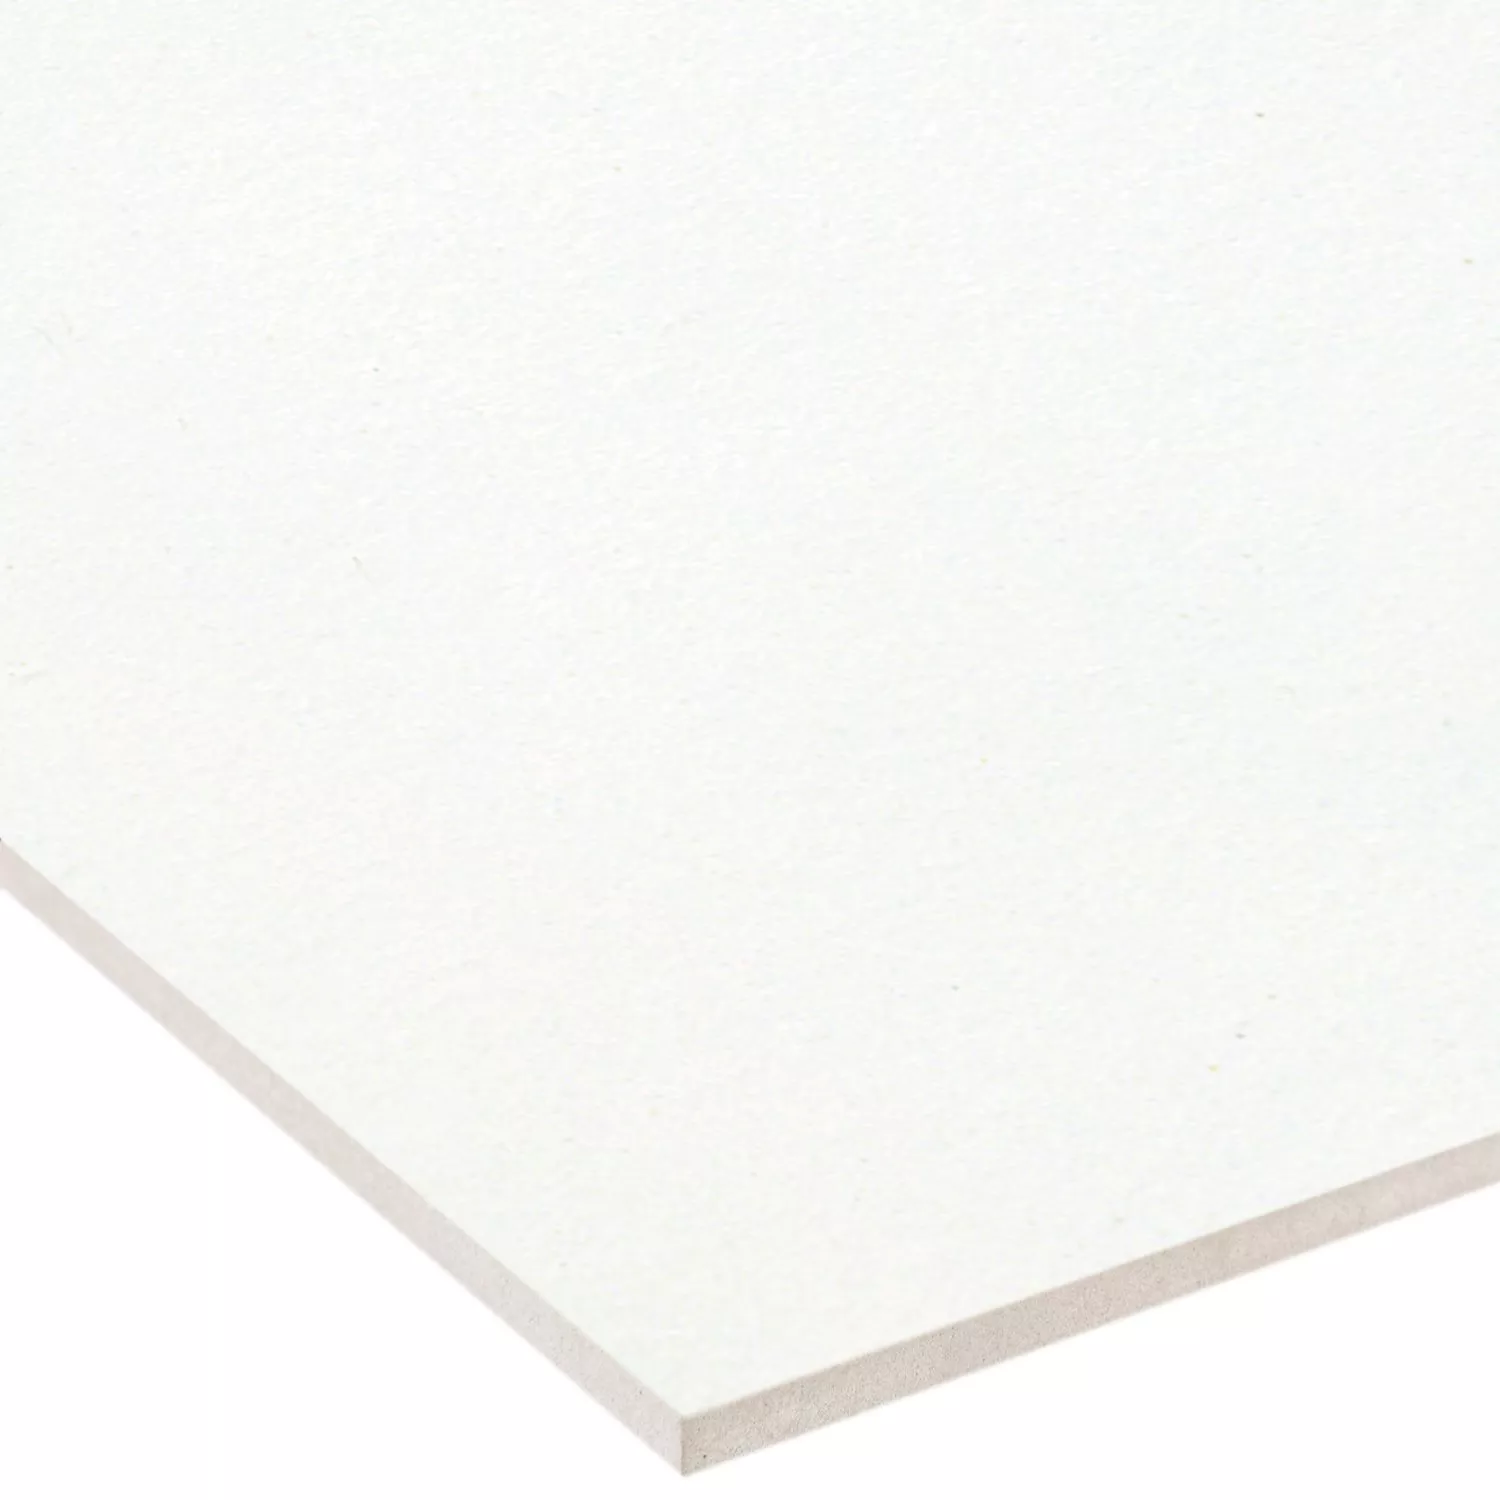 Sample Floor Tiles Adventure White Mat 10x30cm